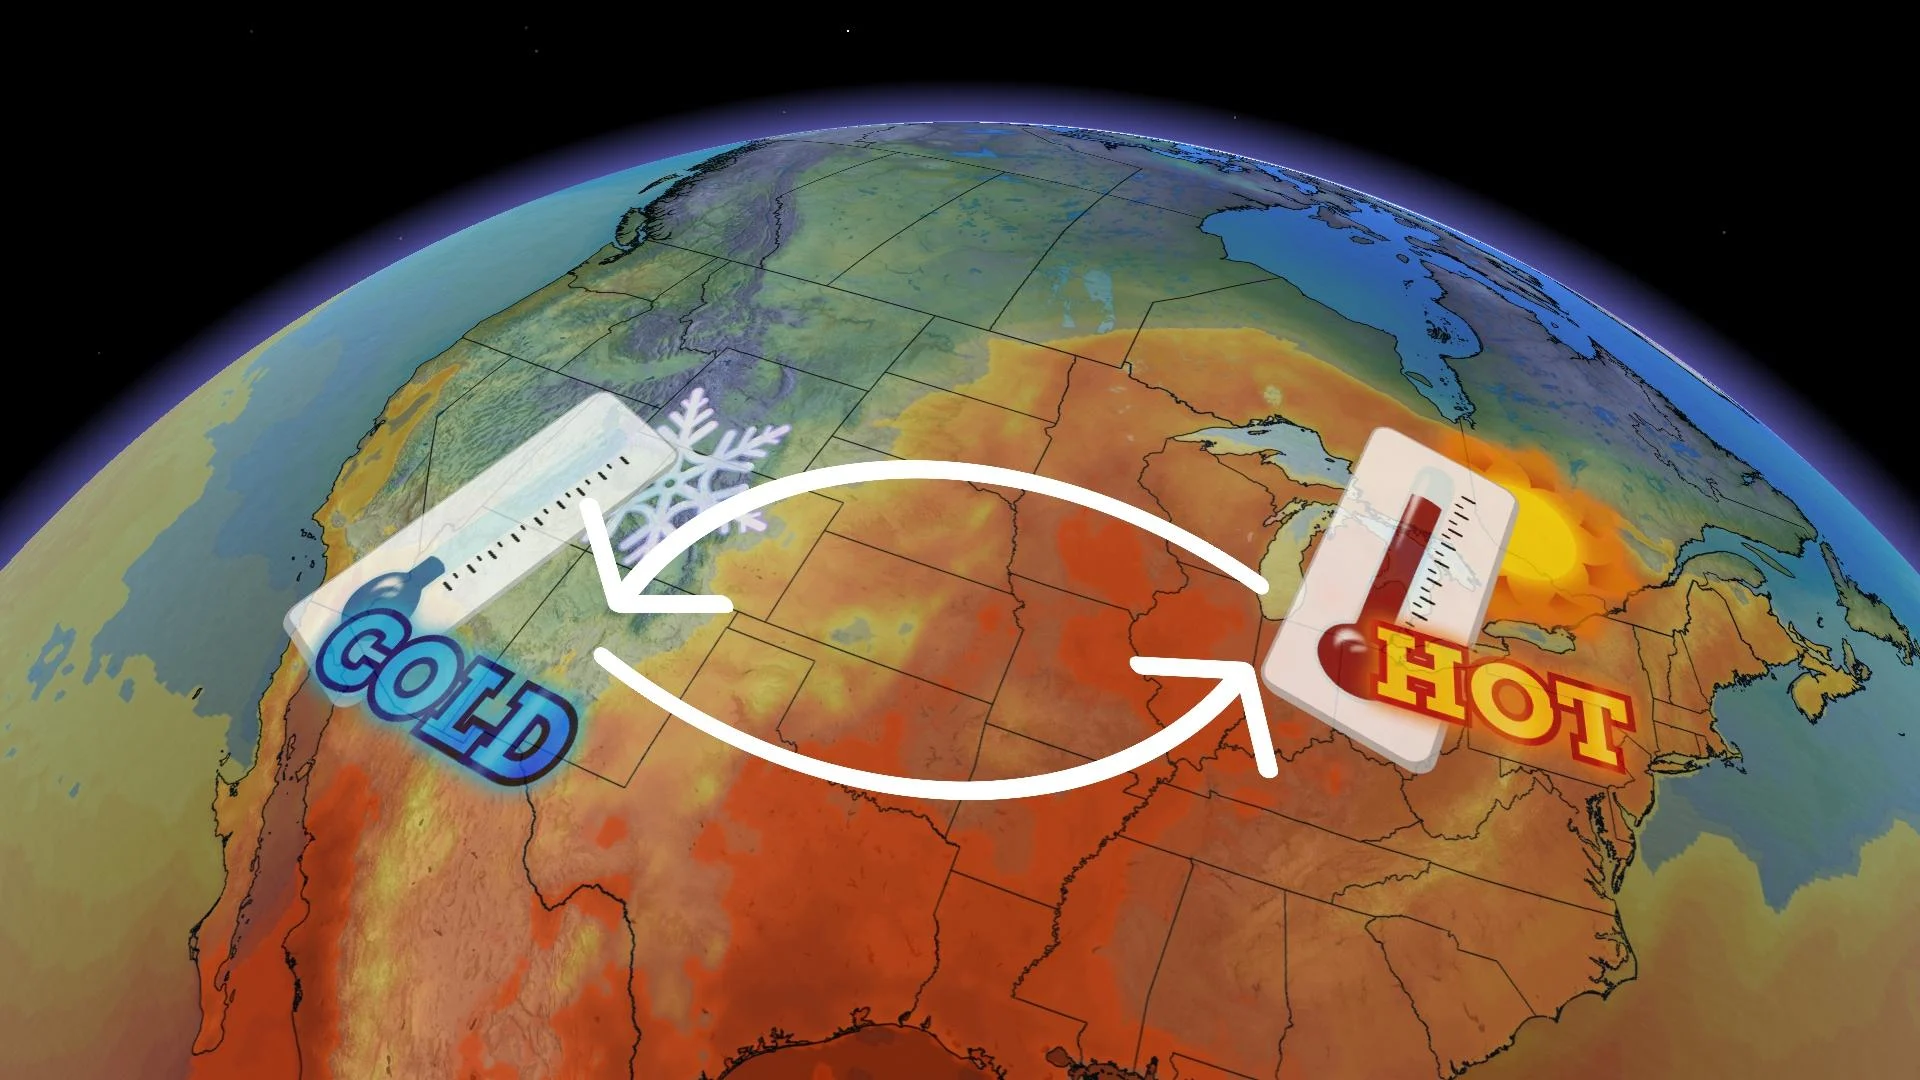 Unlikely upset: Ontario is overheating Las Vegas, Nev., this week